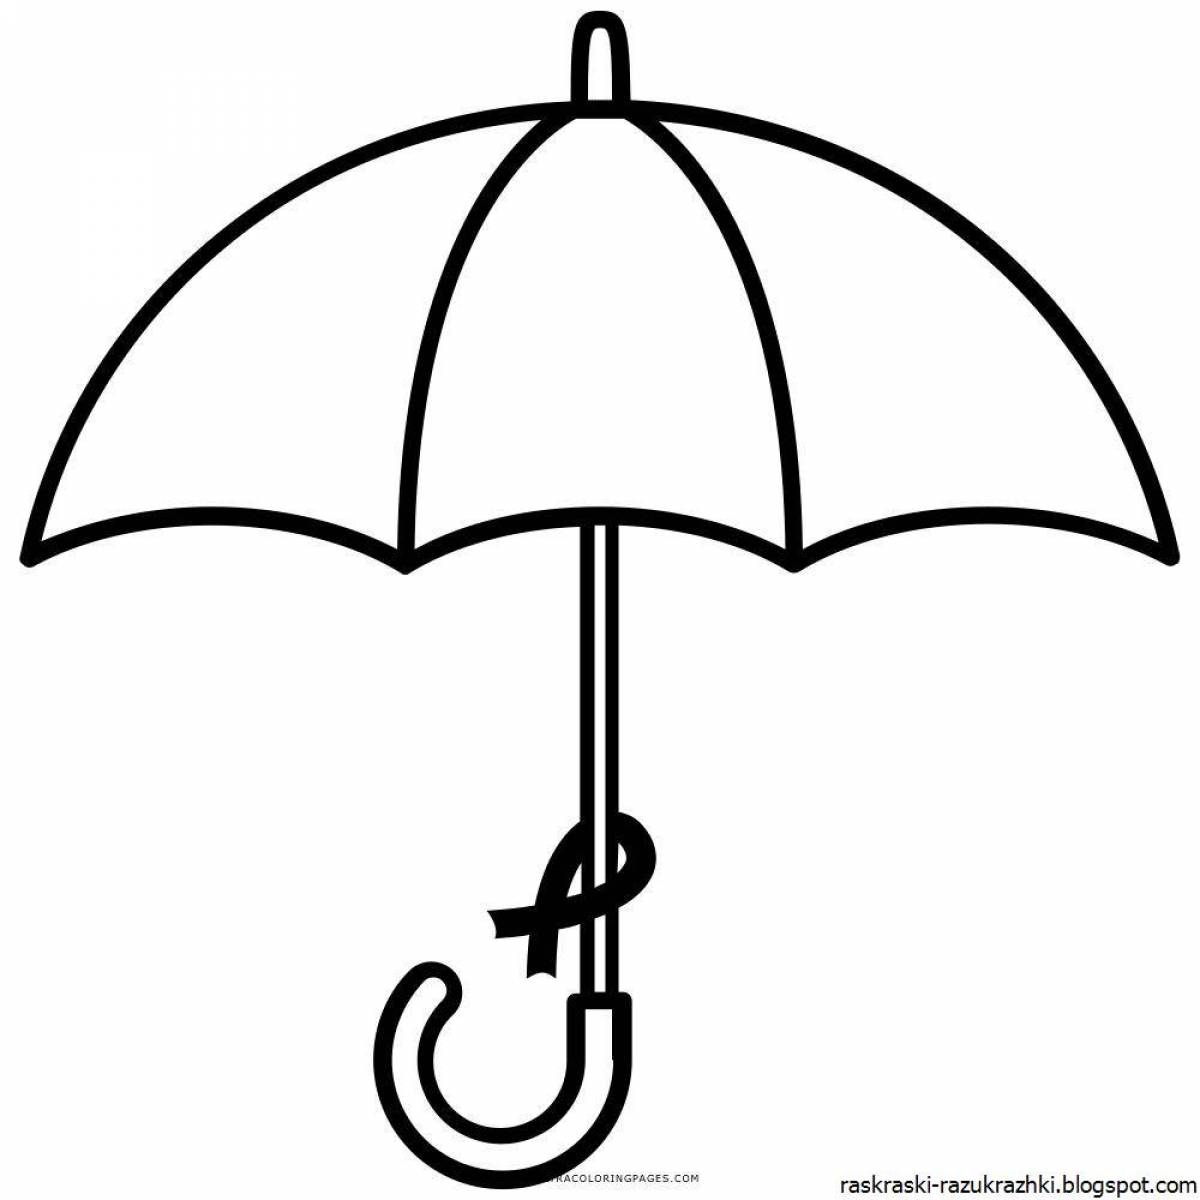 Распечатать зонтик. Зонт раскраска. Раскраска зонтик. Шаблон зонтика для рисования. Зонтик раскраска для детей.